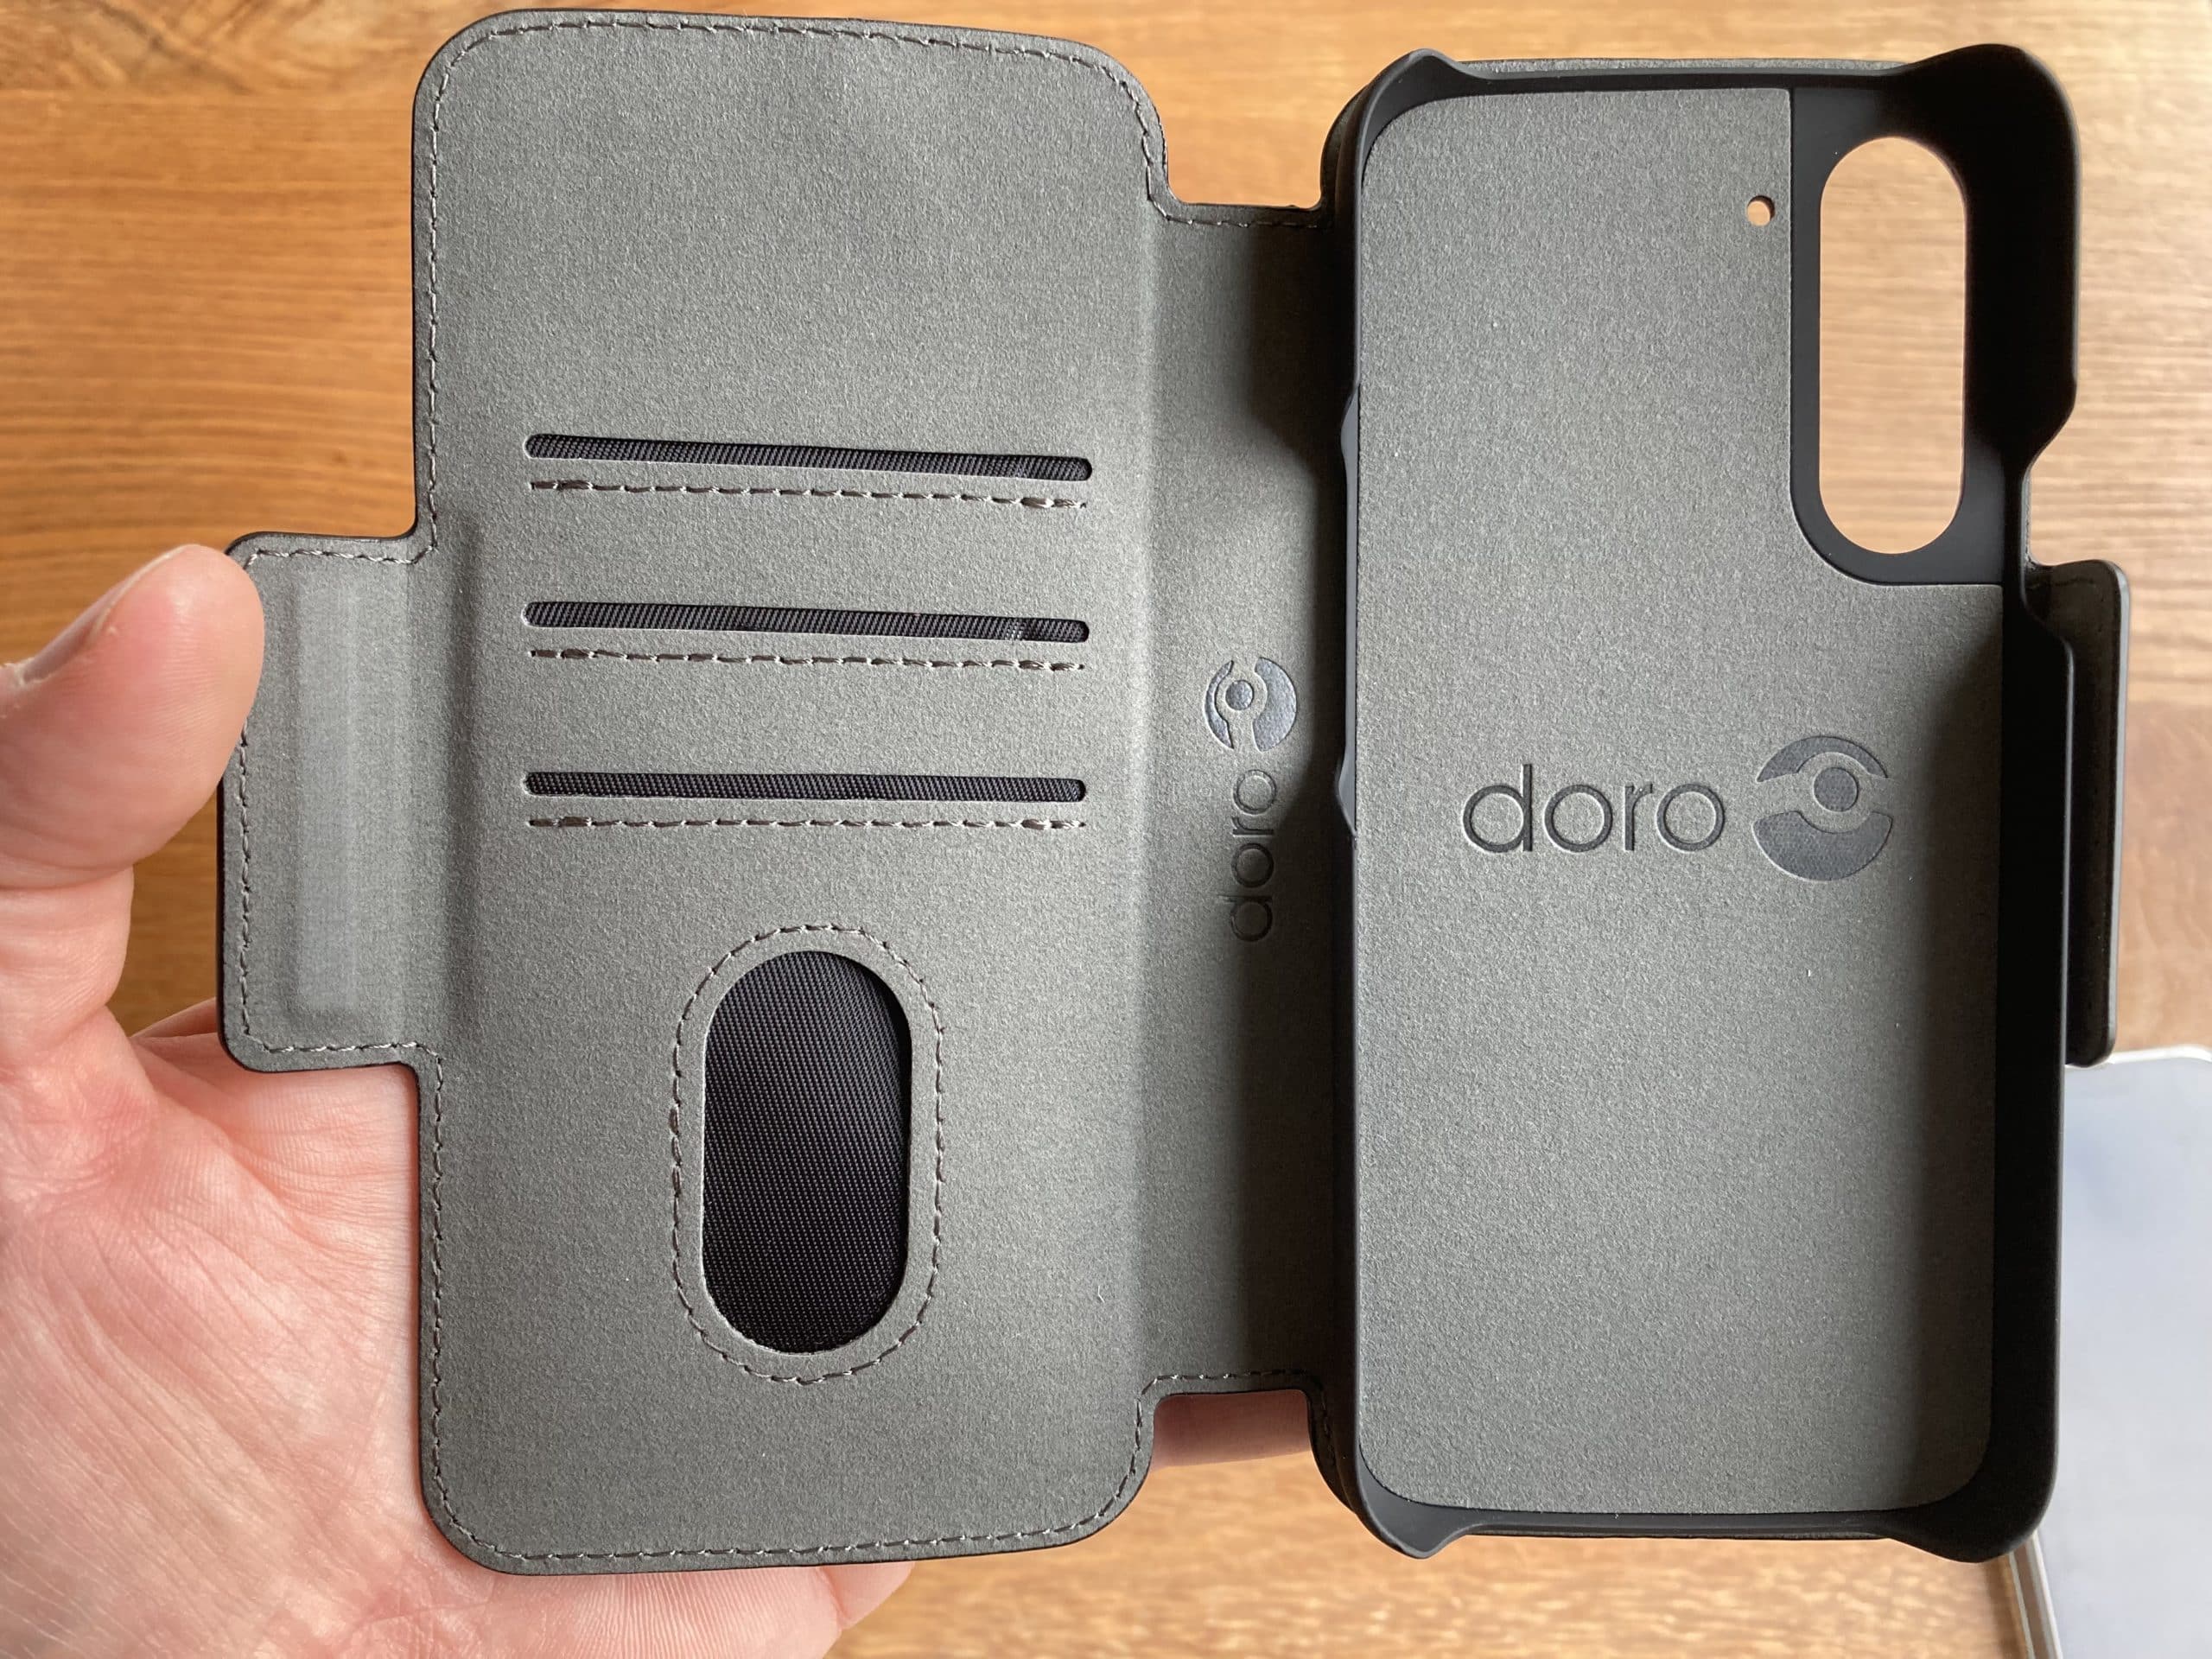 Doro 8050 : le nouveau smartphone senior non stigmatisant